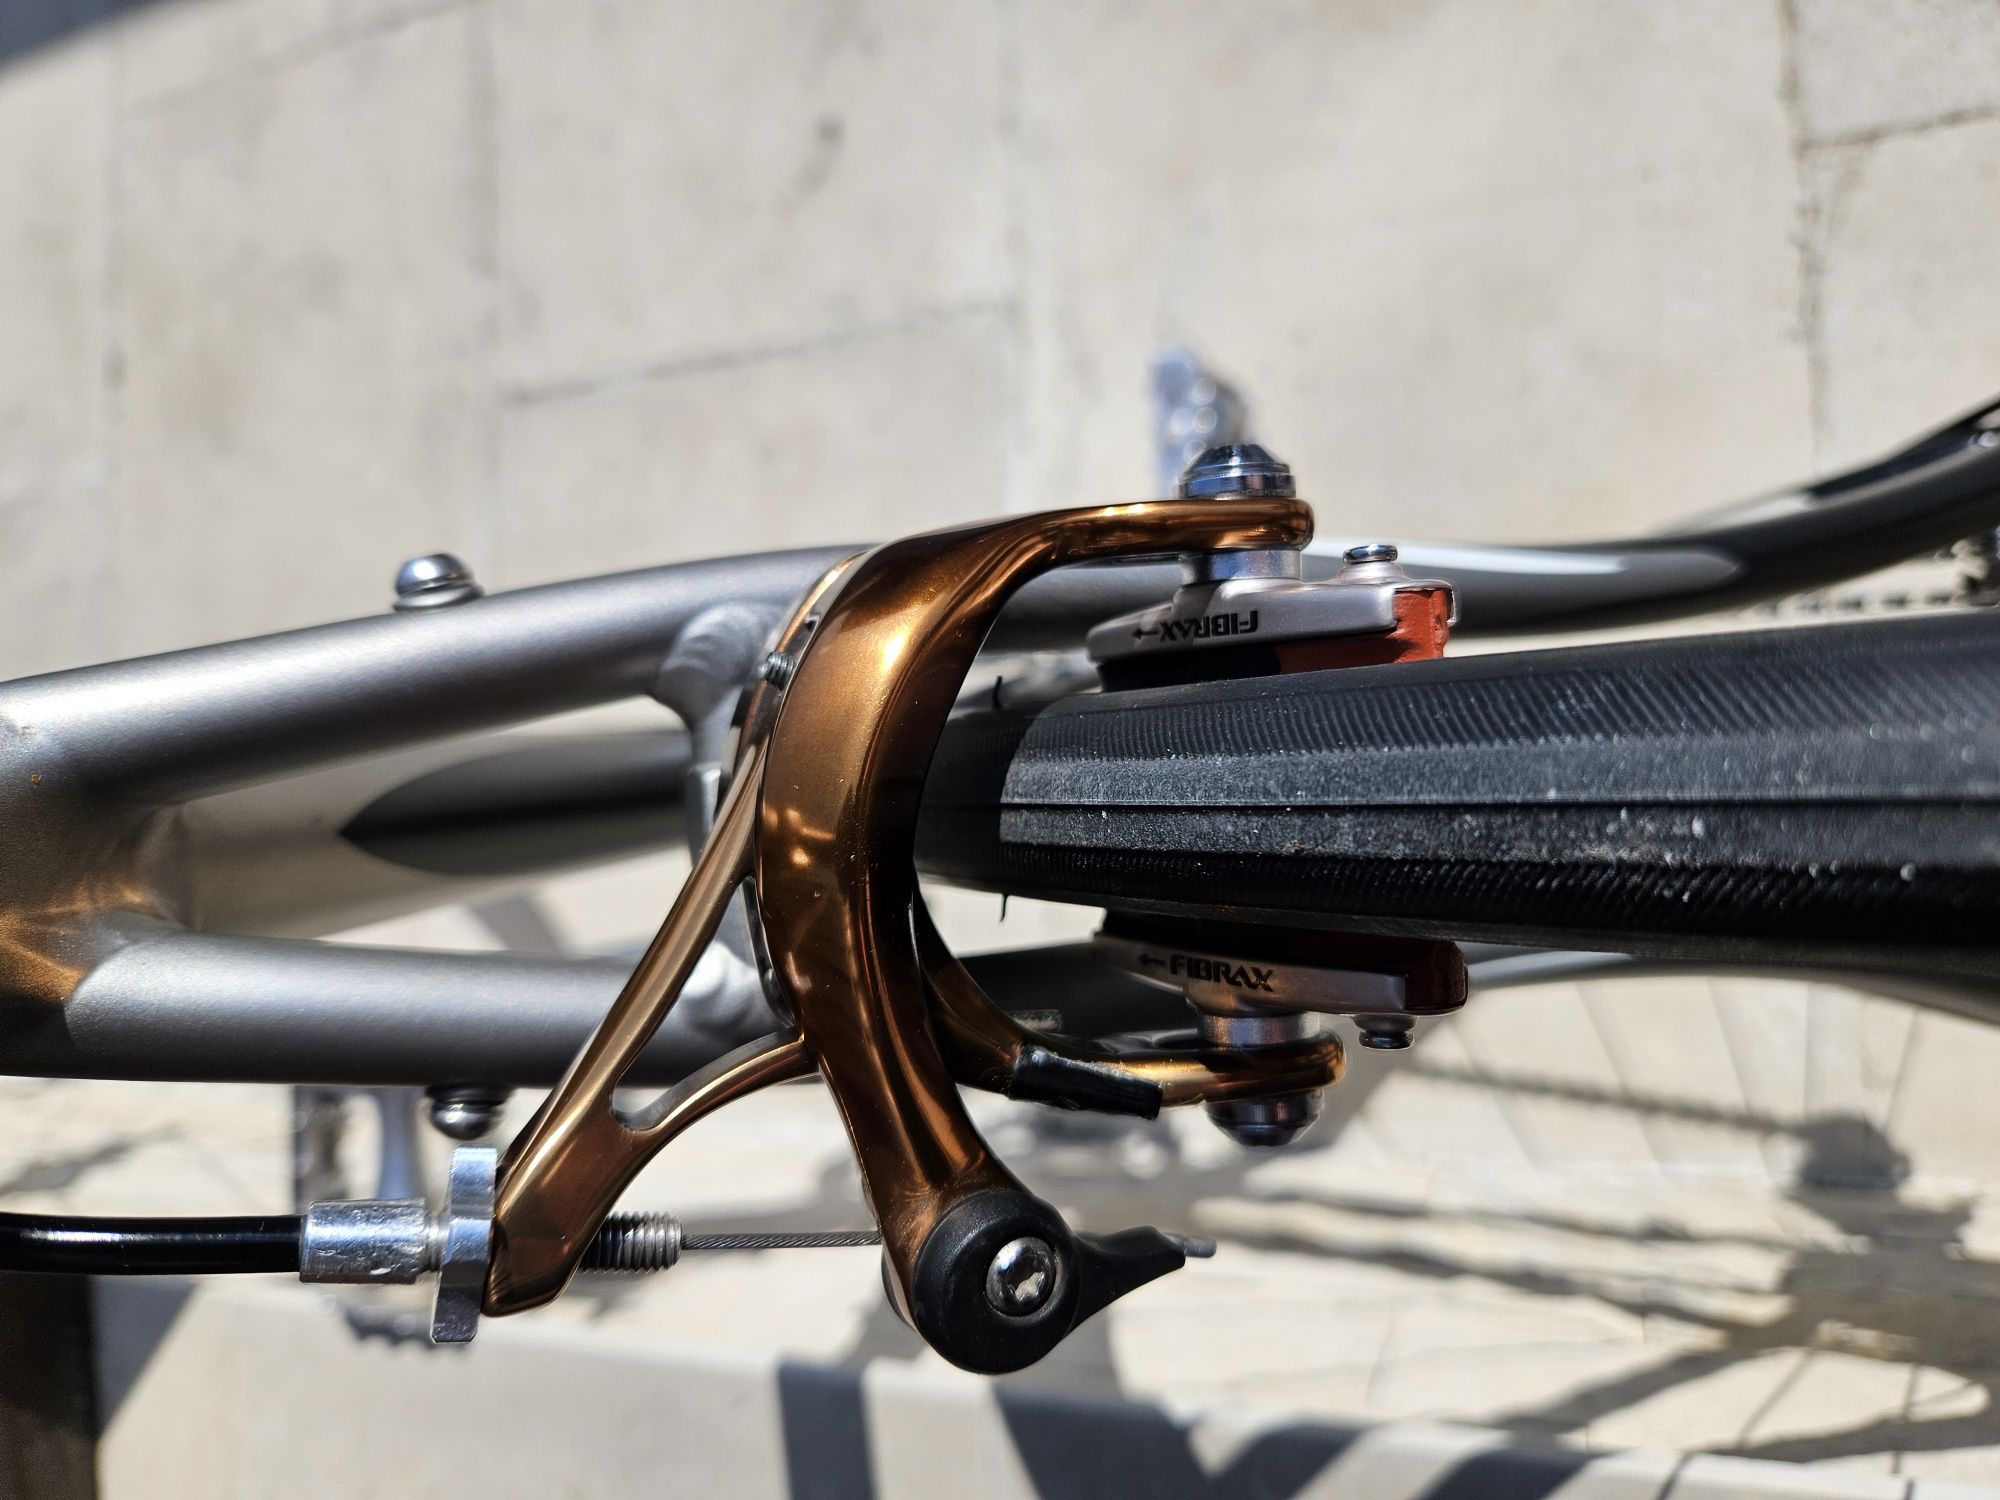 Bicicleta / cursiera Specialized Secteur marimea S (52 cm)